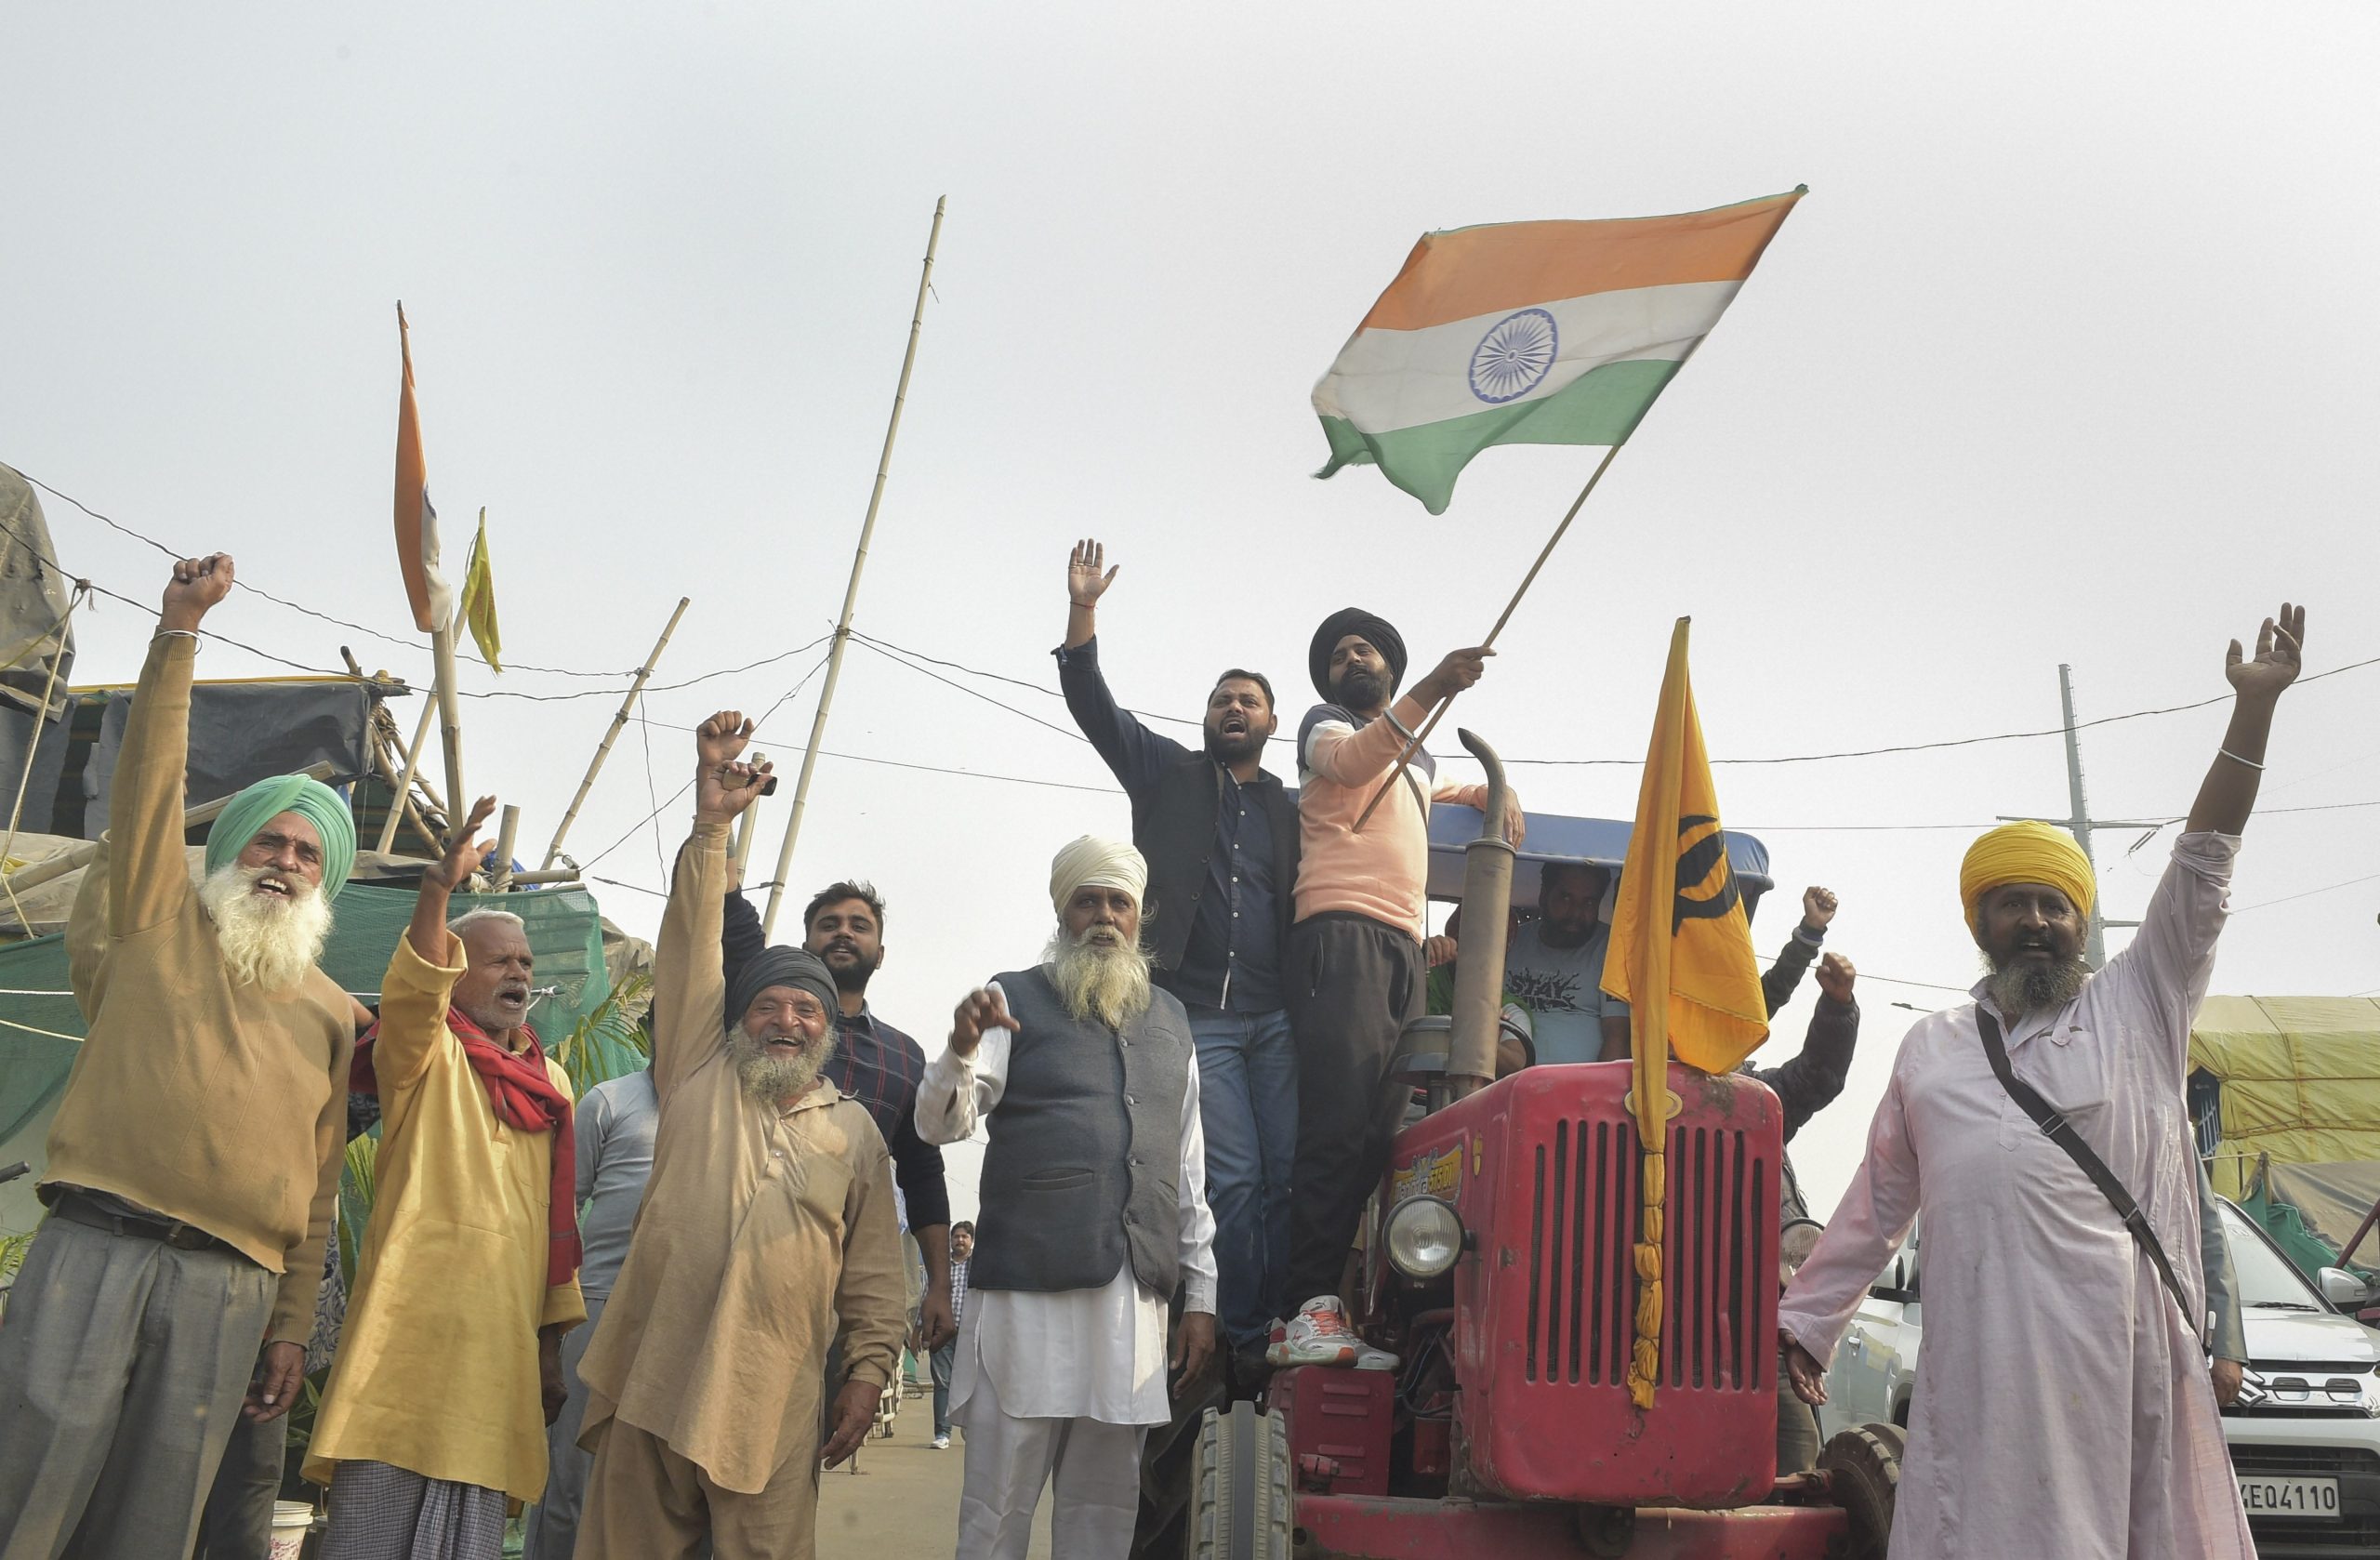 सिंघू, टिकरी और ग़ाज़ीपुर सीमाएं भारतीय जनतंत्र की यात्रा के मील के पत्थर हैं